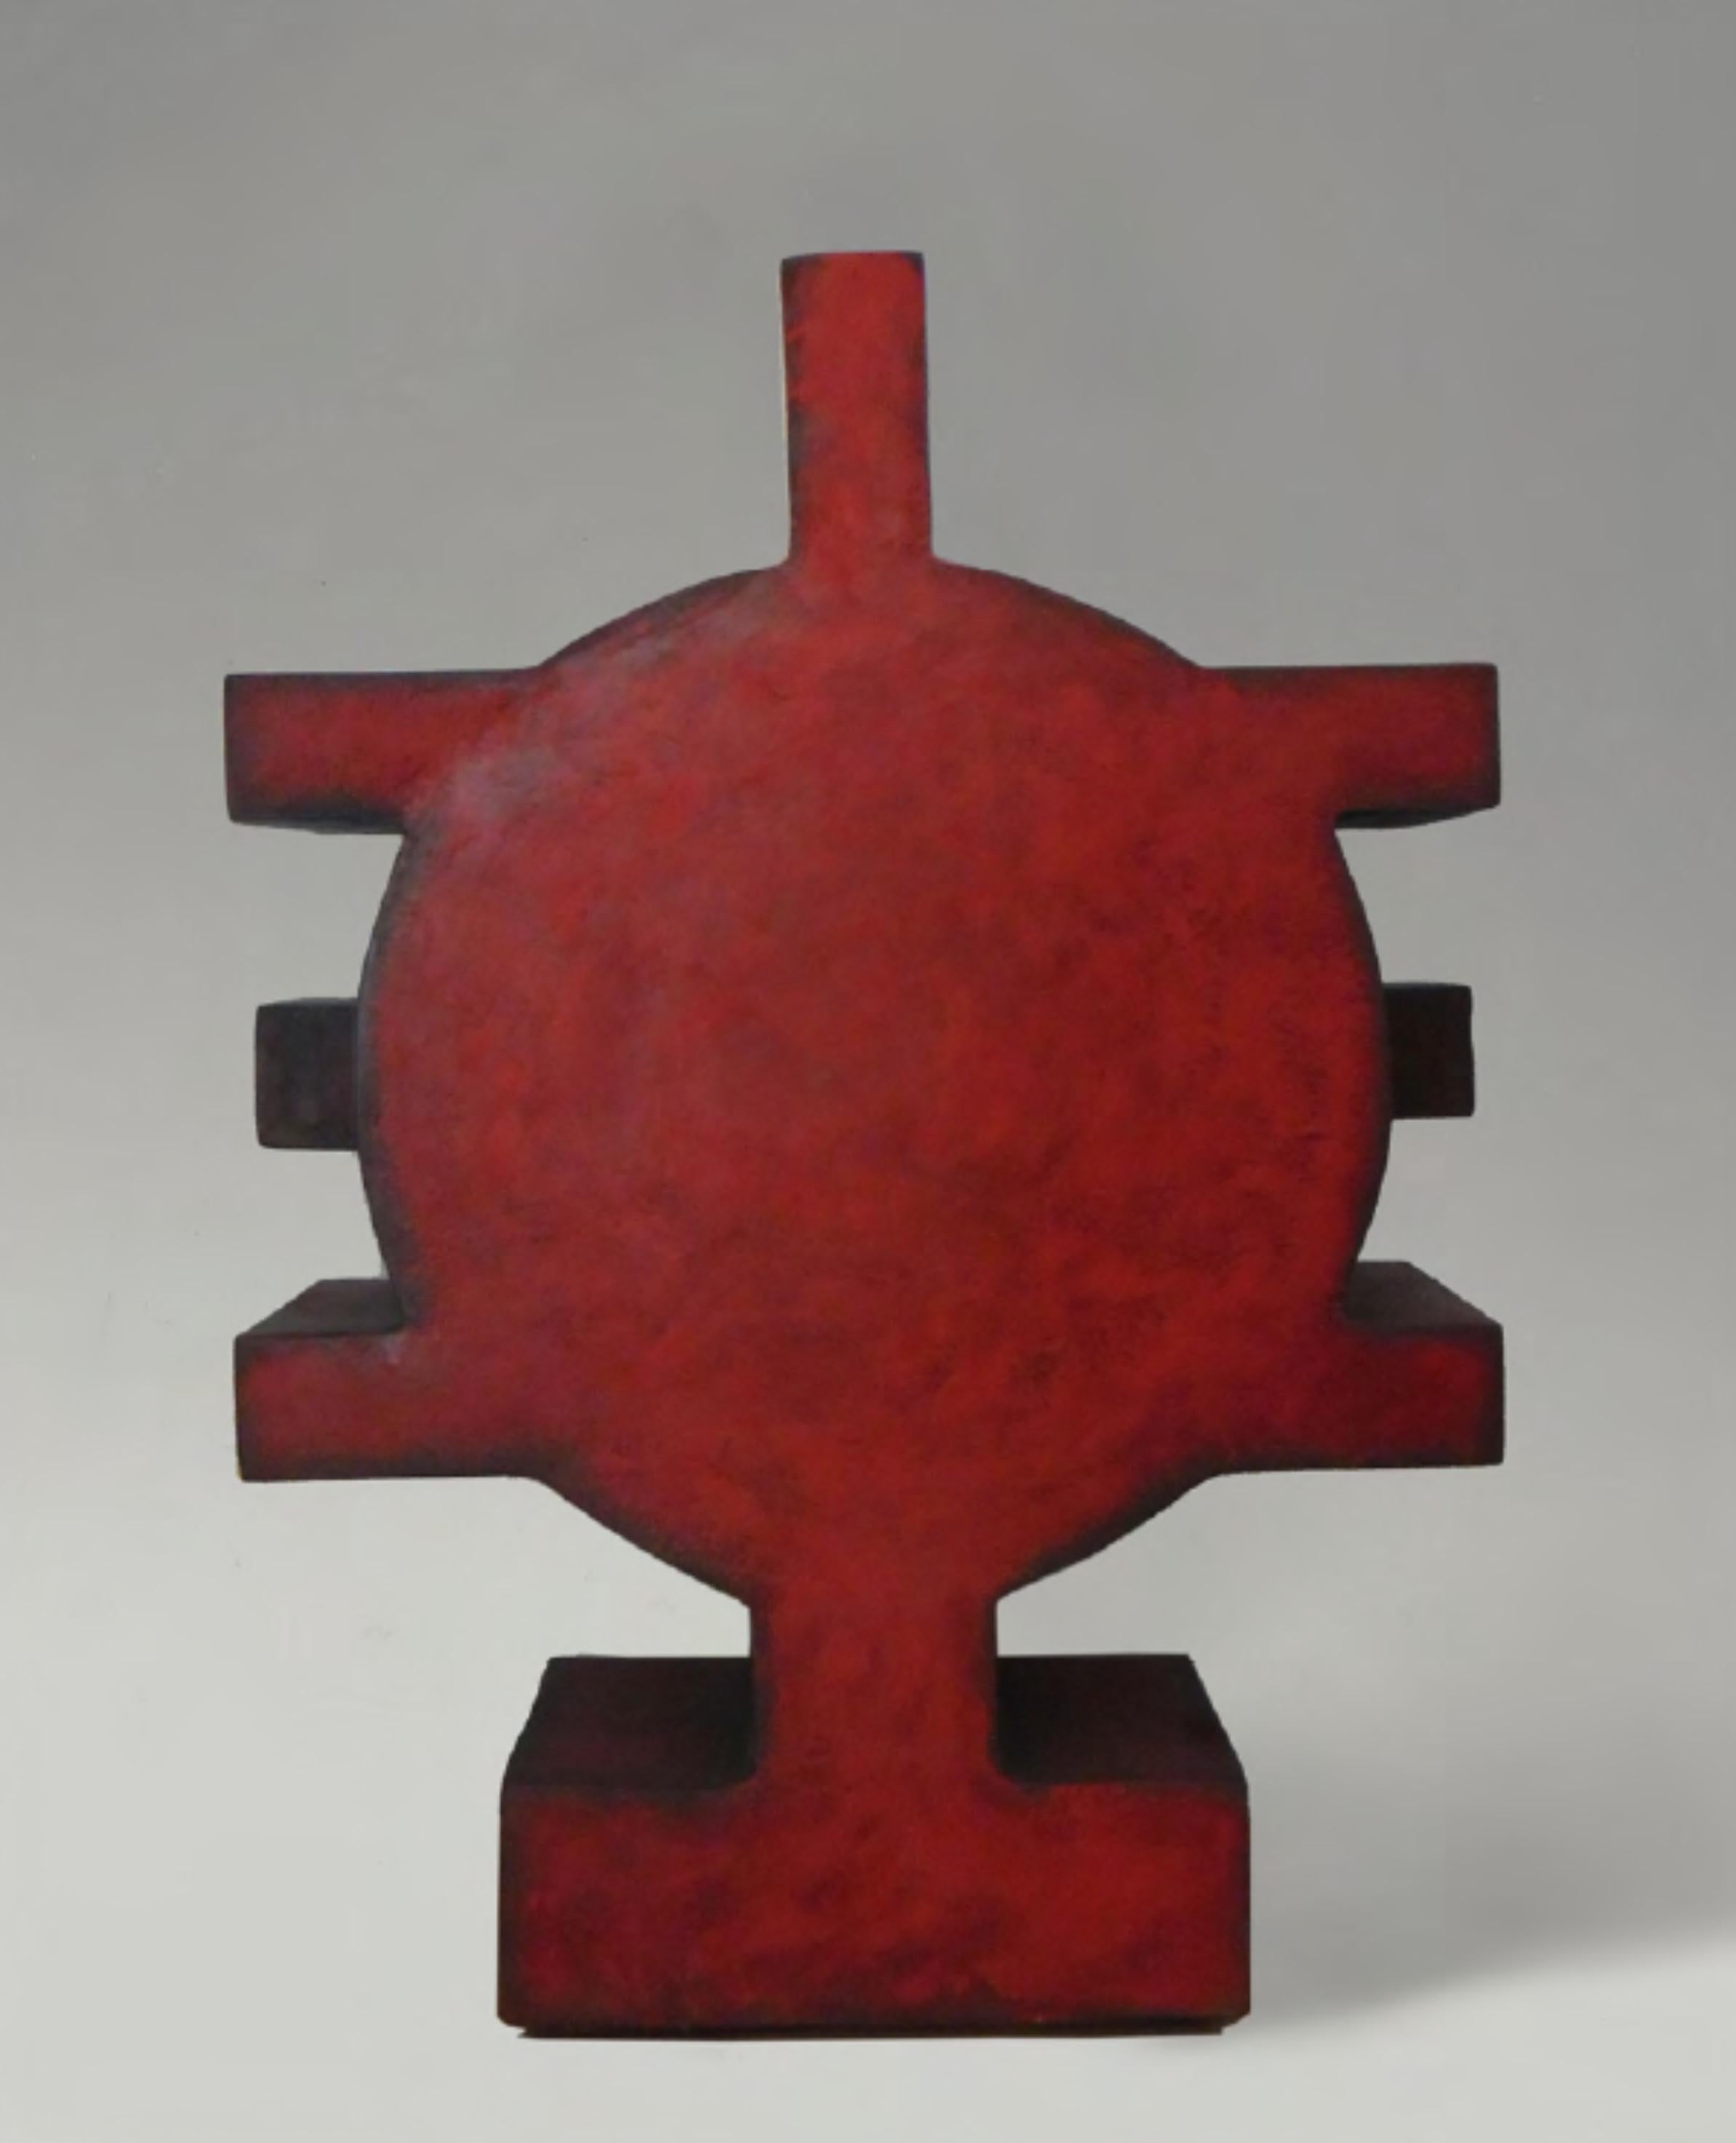 CF Te1.10 Terre von Caturegli Formica
Abmessungen: B 45 x H 52 cm
MATERIALIEN: Keramik

Terres, Dakar, Senegal, 1987-1991 

TERRES ist eine Serie von symbolischen Keramikskulpturen, die in Dakar, Senegal, im Atelier 